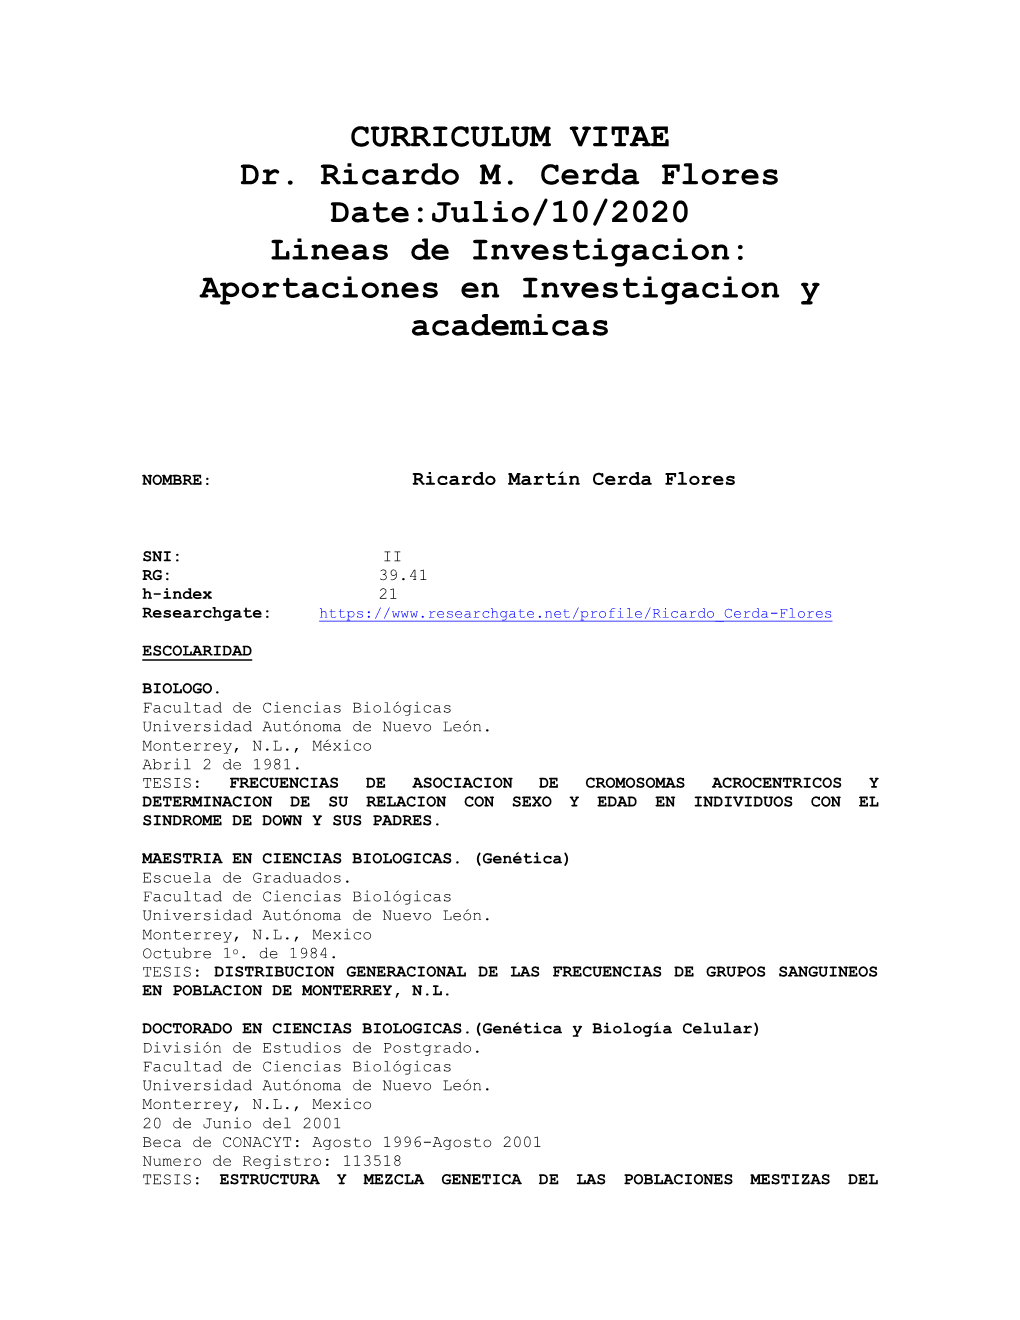 CURRICULUM VITAE Dr. Ricardo M. Cerda Flores Date:Julio/10/2020 Lineas De Investigacion: Aportaciones En Investigacion Y Academicas